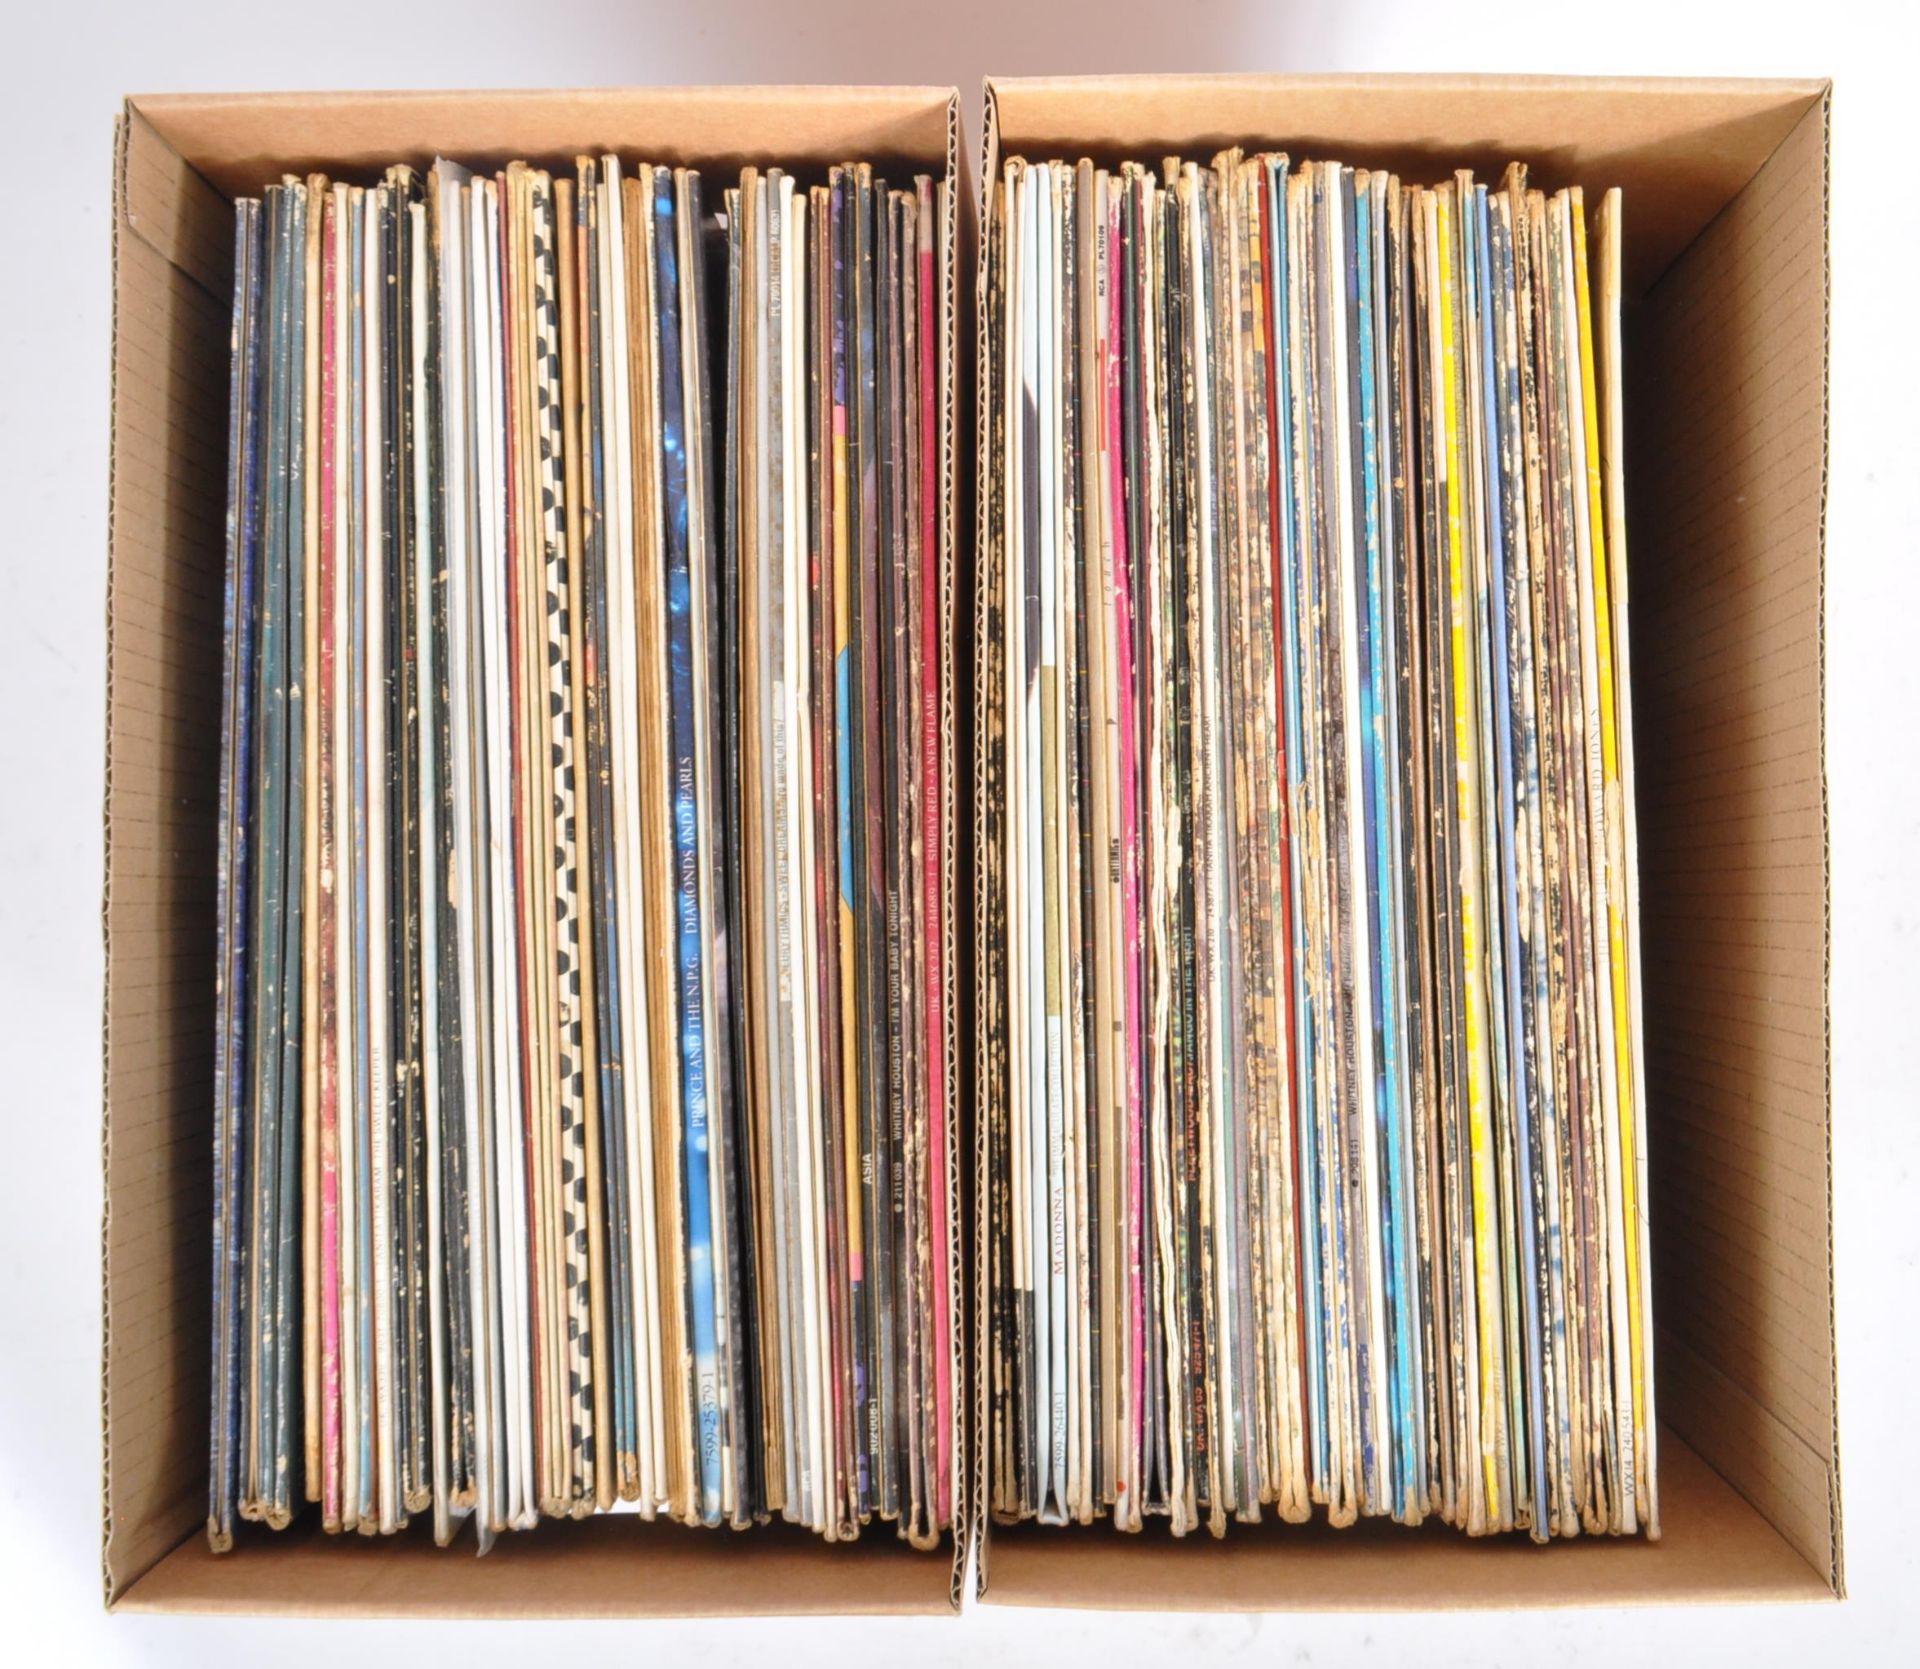 COLLECTION OF LATE 20TH CENTURY 33 RPM VINYL ALBUM RECORDS - Bild 6 aus 6